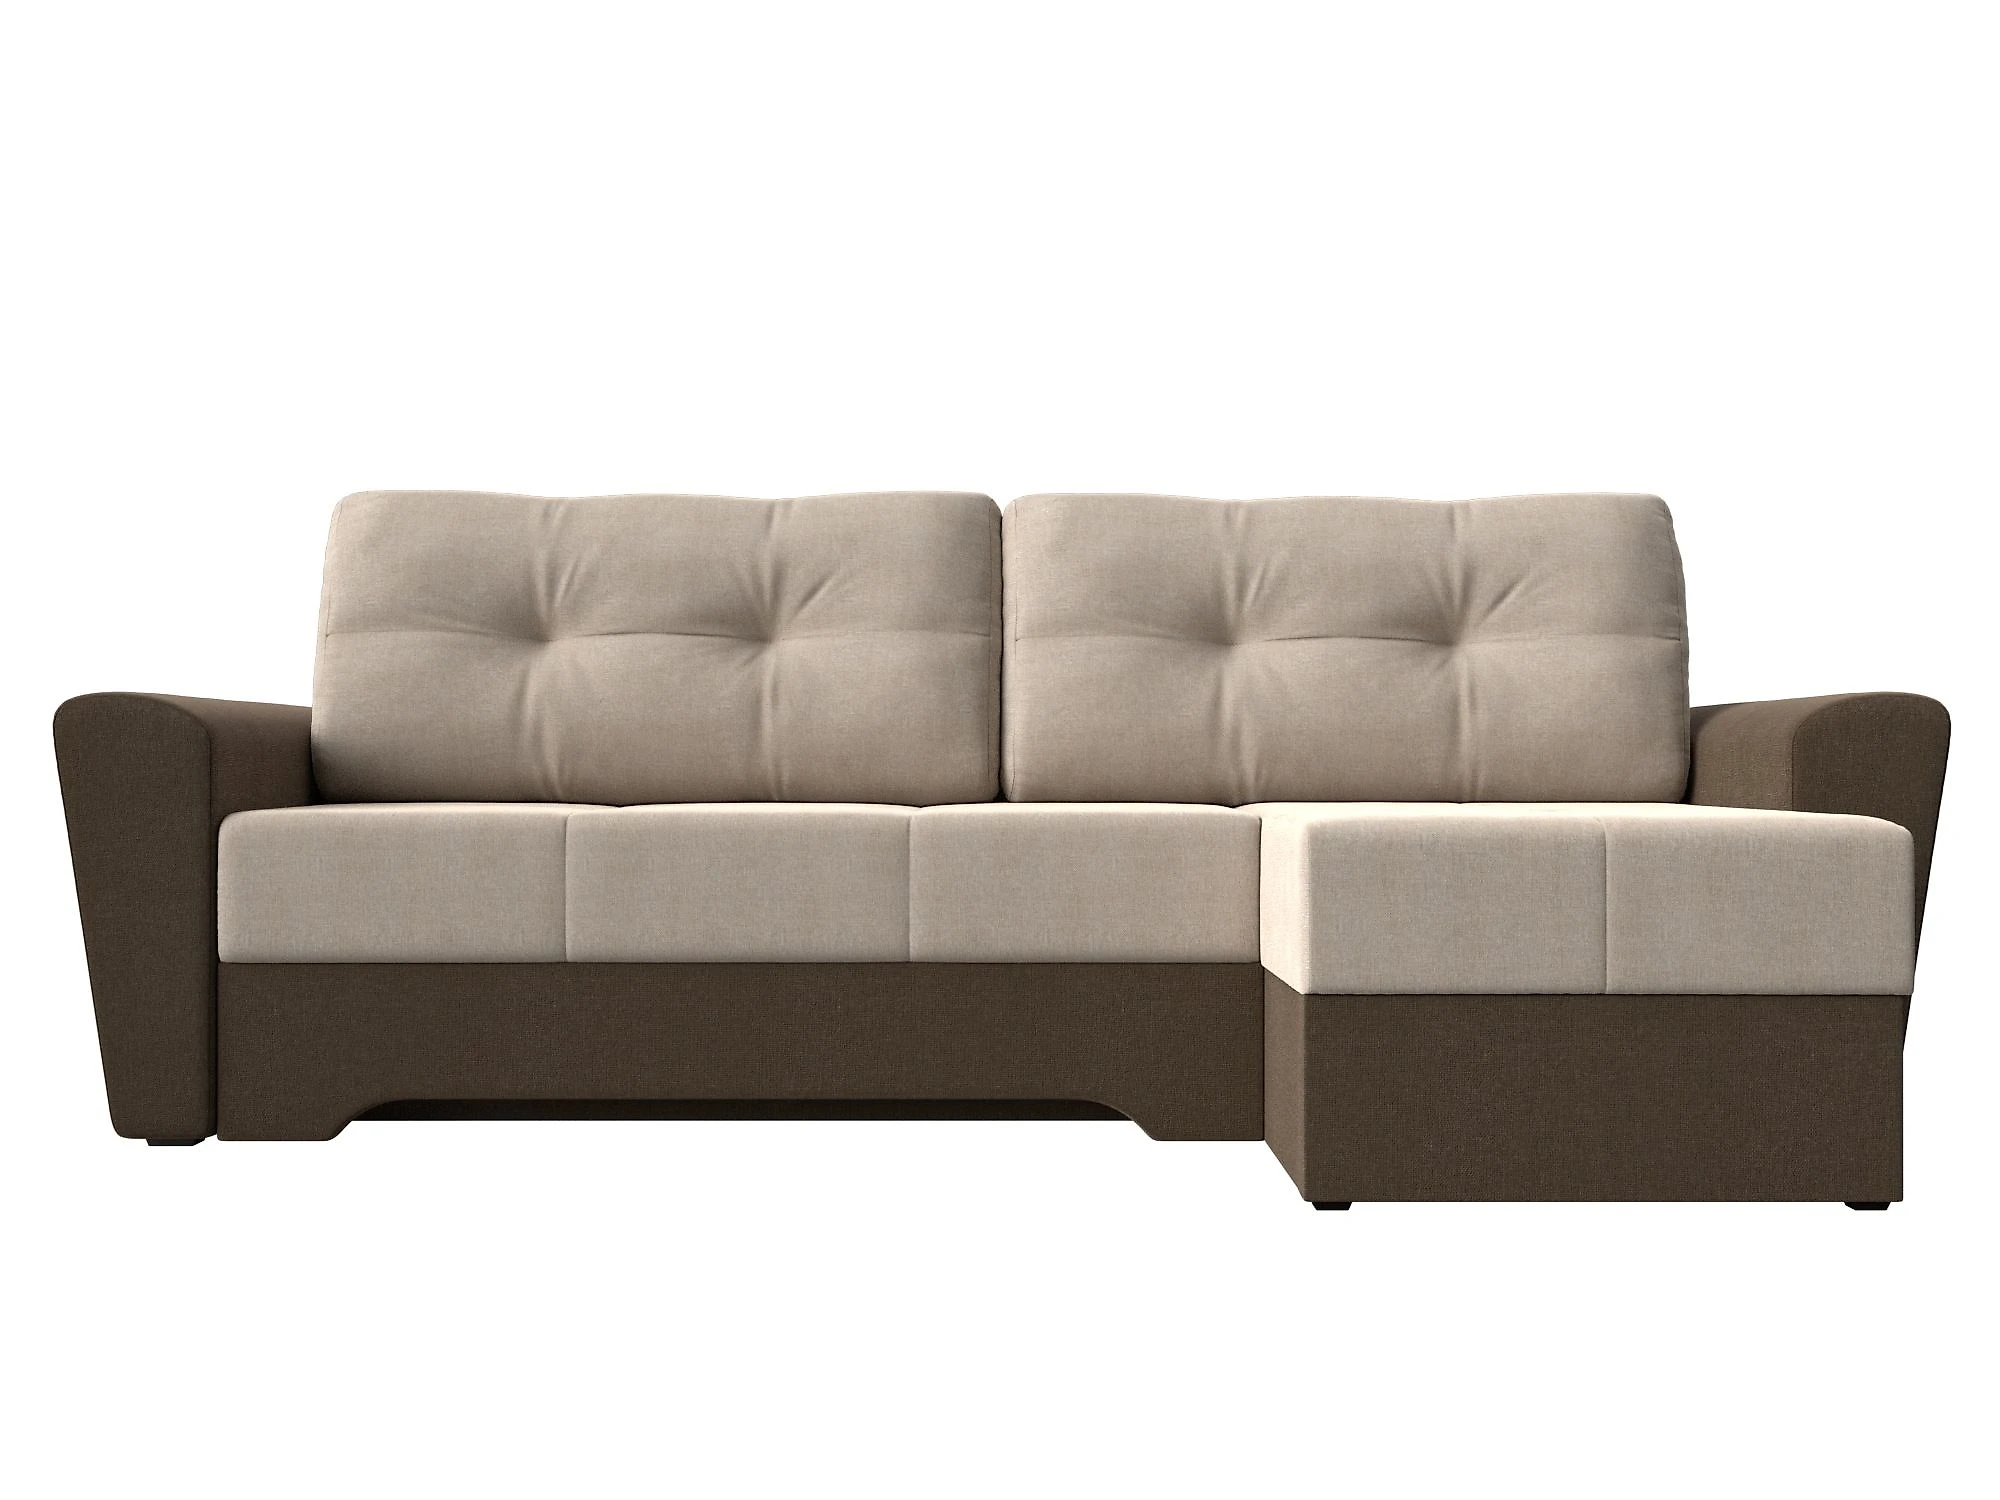  угловой диван из рогожки Амстердам Кантри Дизайн 5